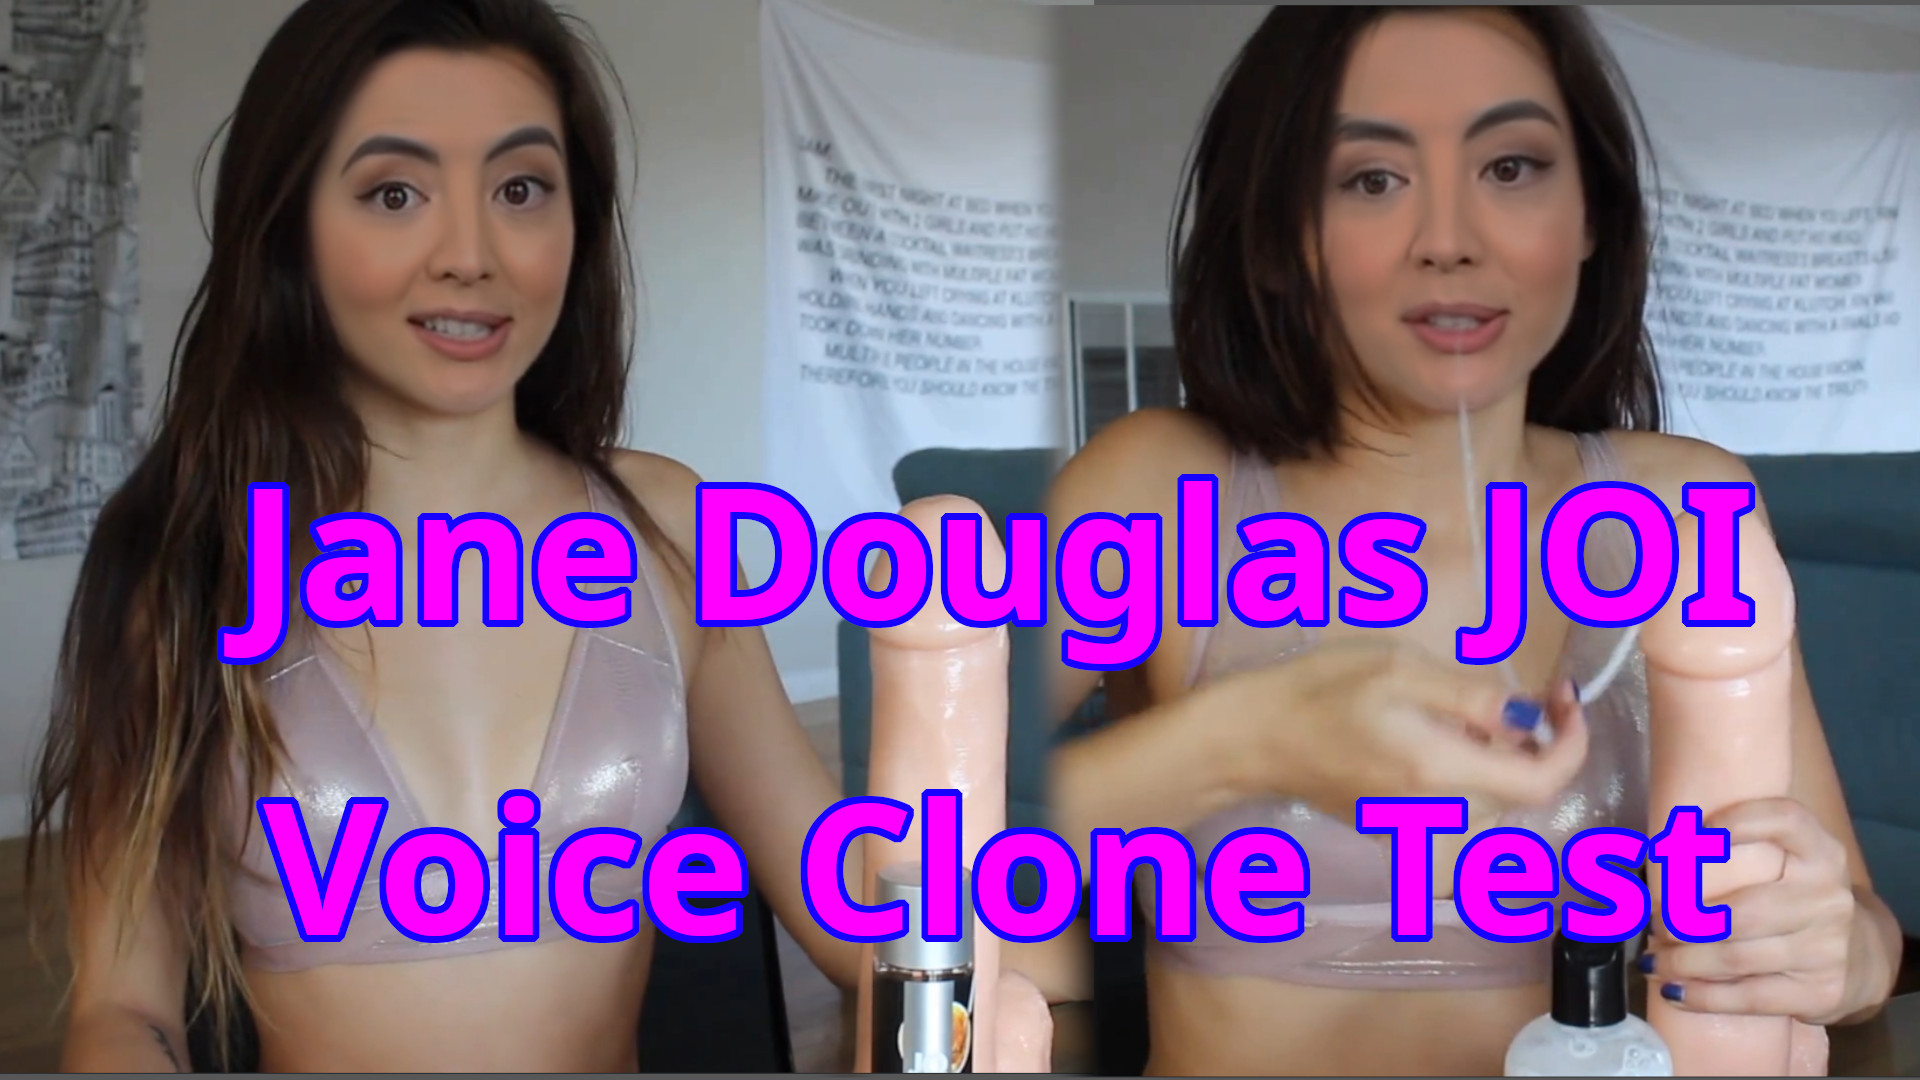 Jane Douglas JOI - Voice Clone test video